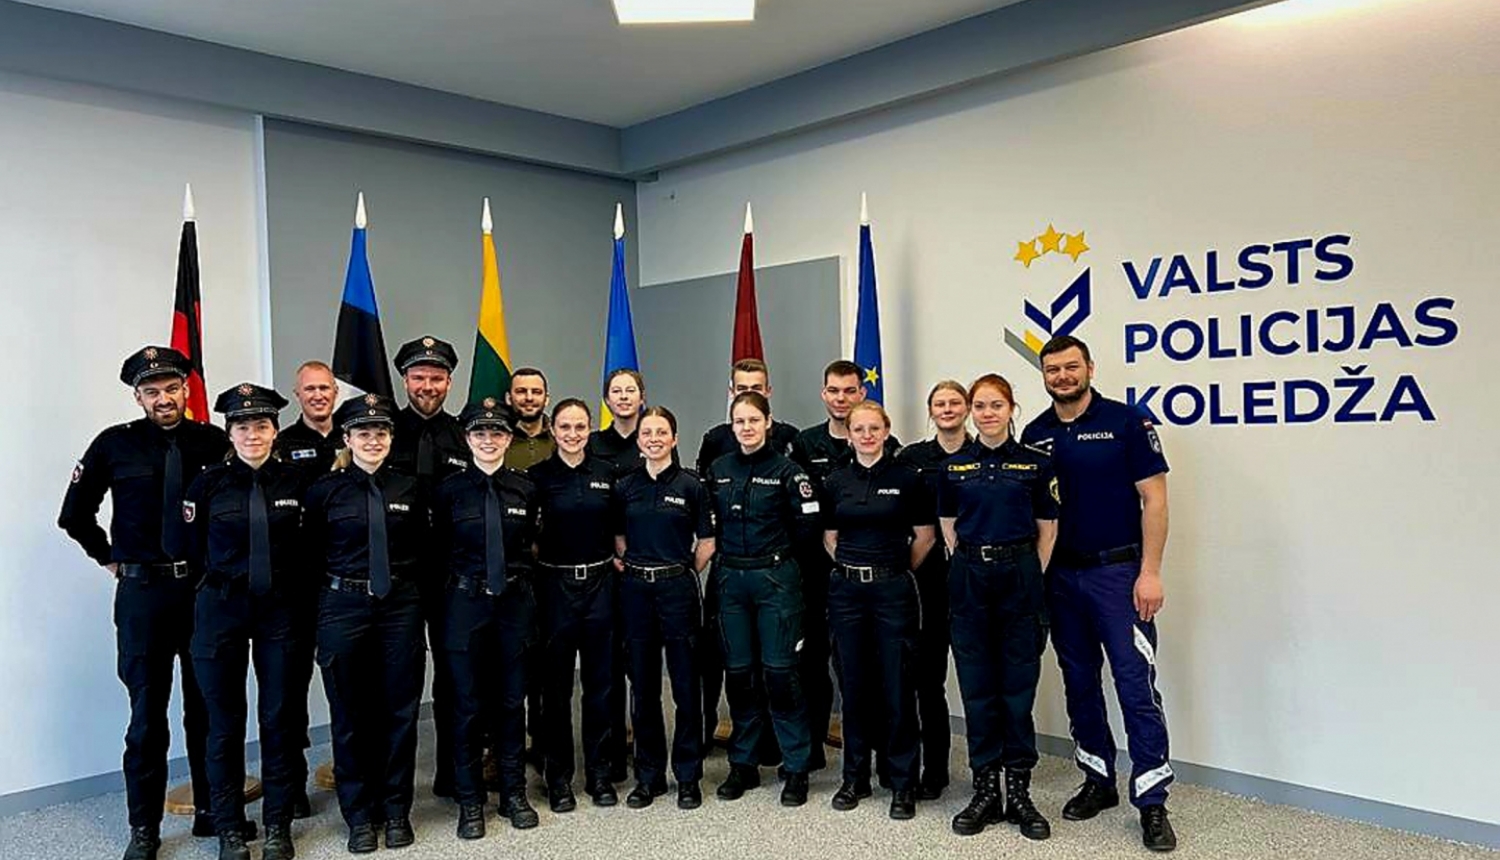 Valsts policijas koledžas direktora kopbilde ar Vācijas, Lietuvas un Igauņu policijas kadetiem